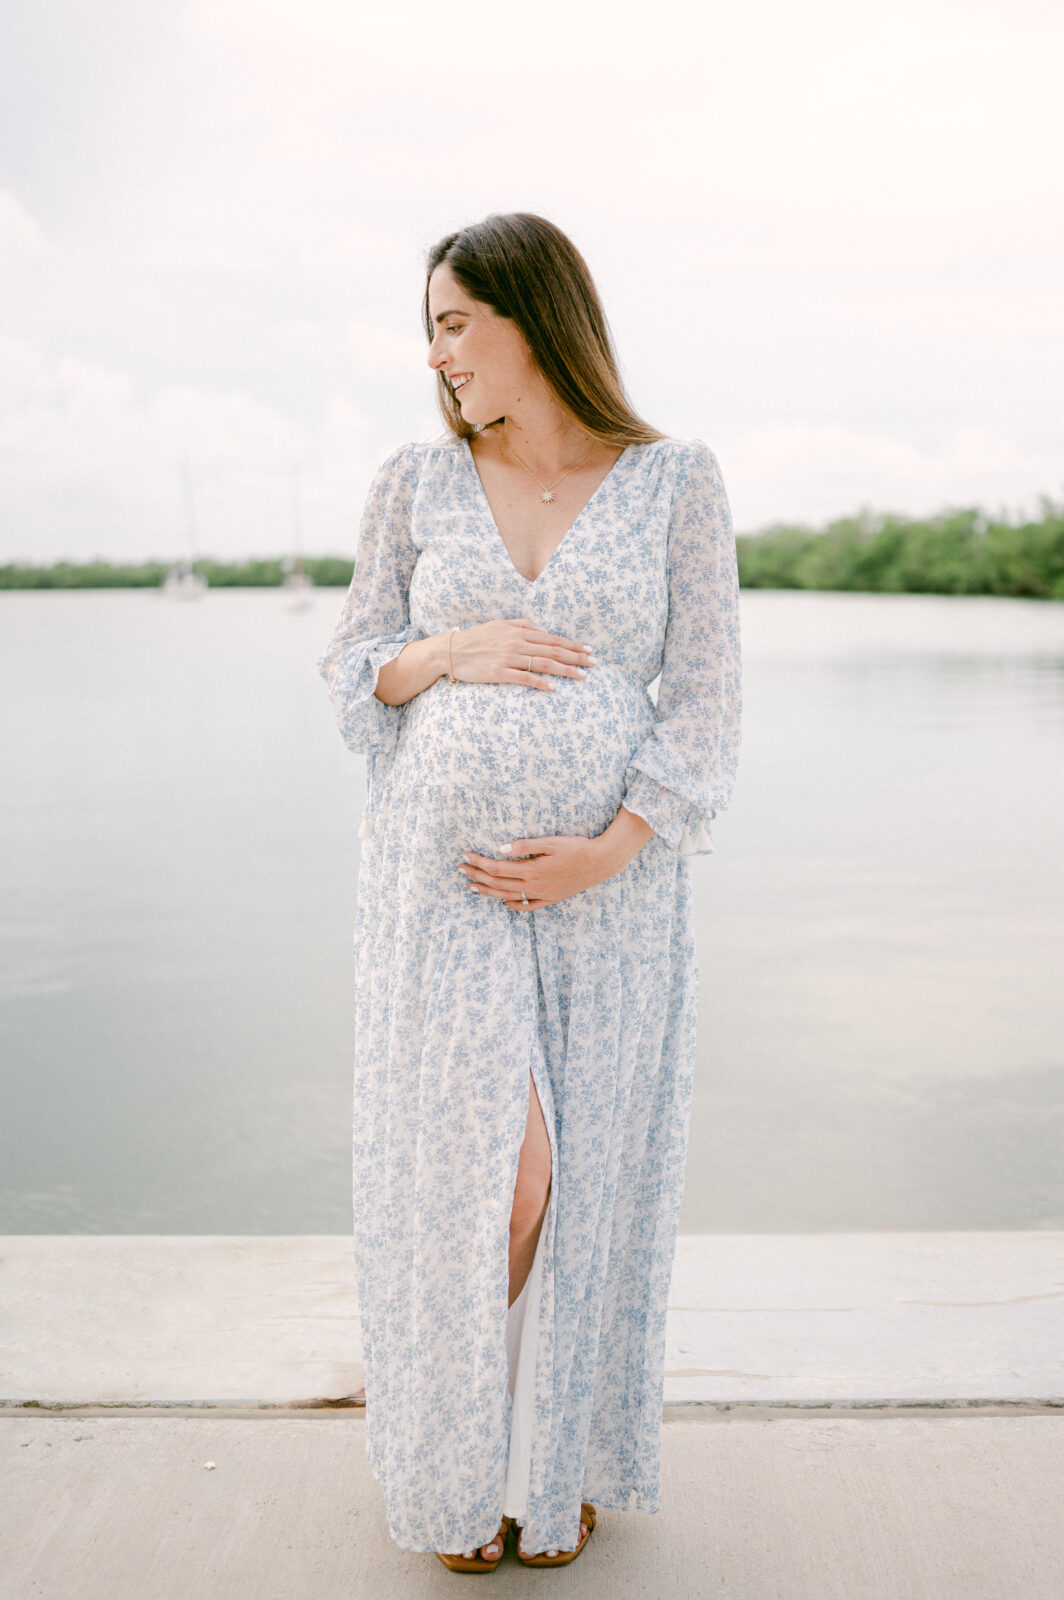 Miami Maternity portrait